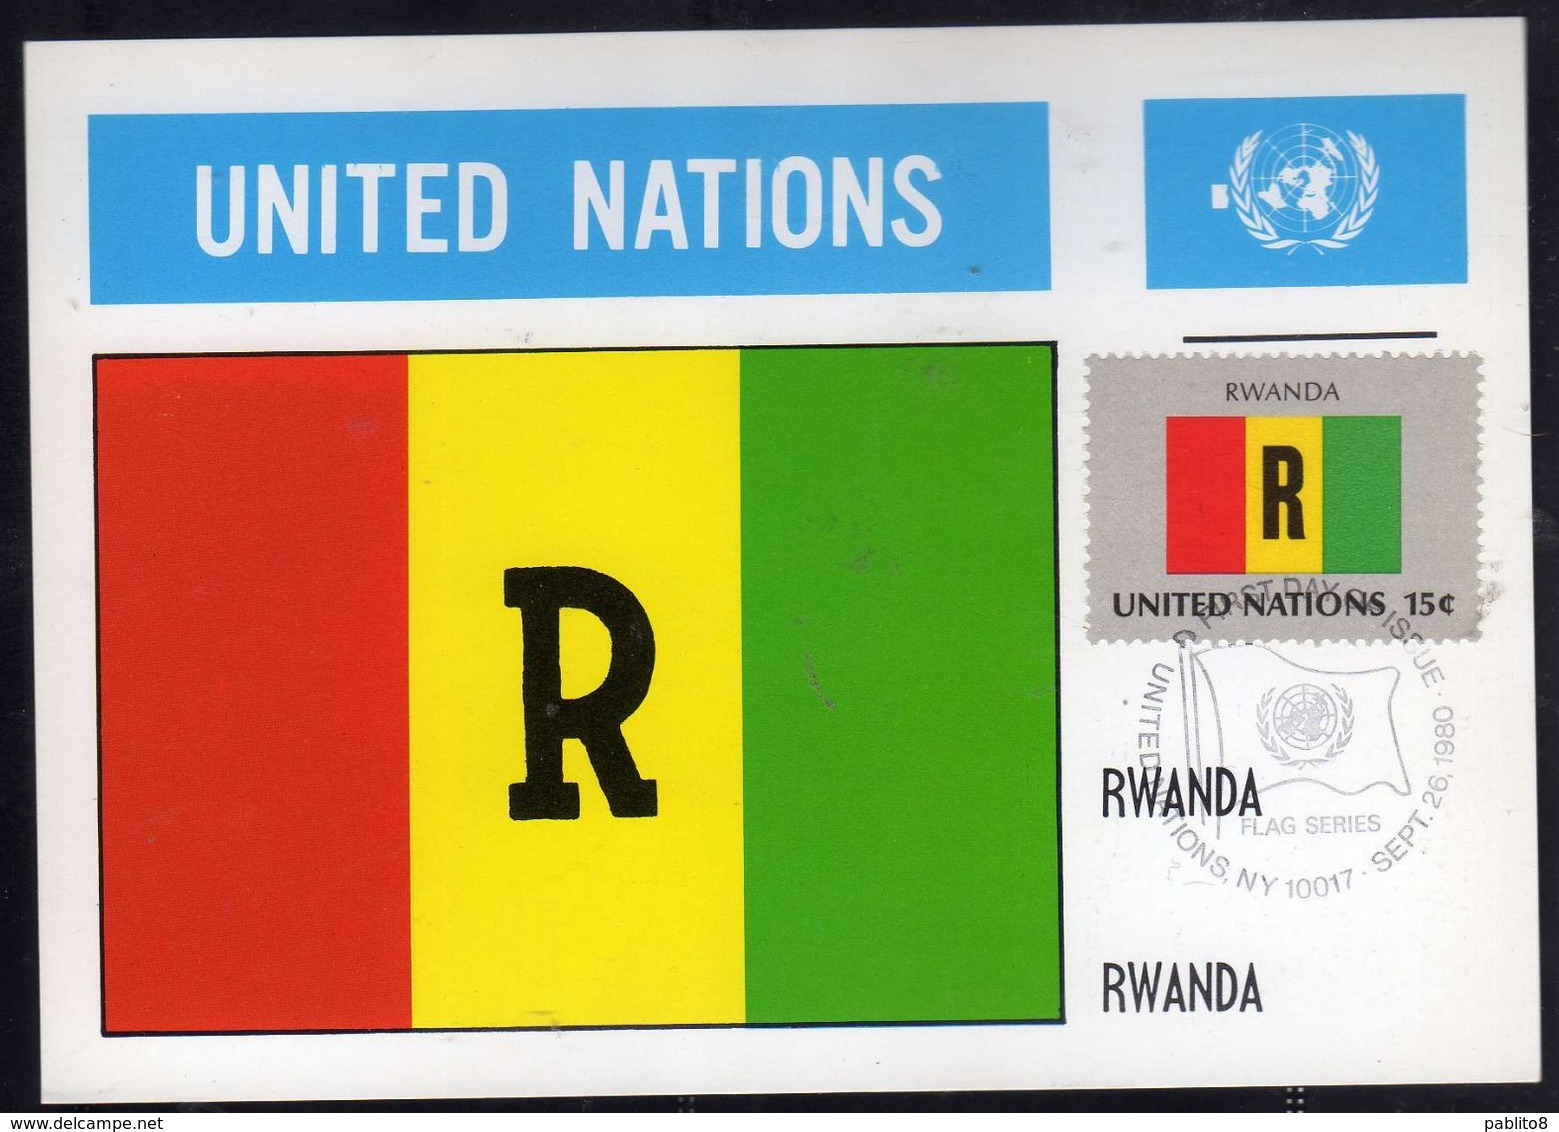 UNITED NATIONS NEW YORK ONU UN UNO 1980 FLAGS RWANDA RUANDA FDC MAXI CARD CARTOLINA MAXIMUM - Cartes-maximum